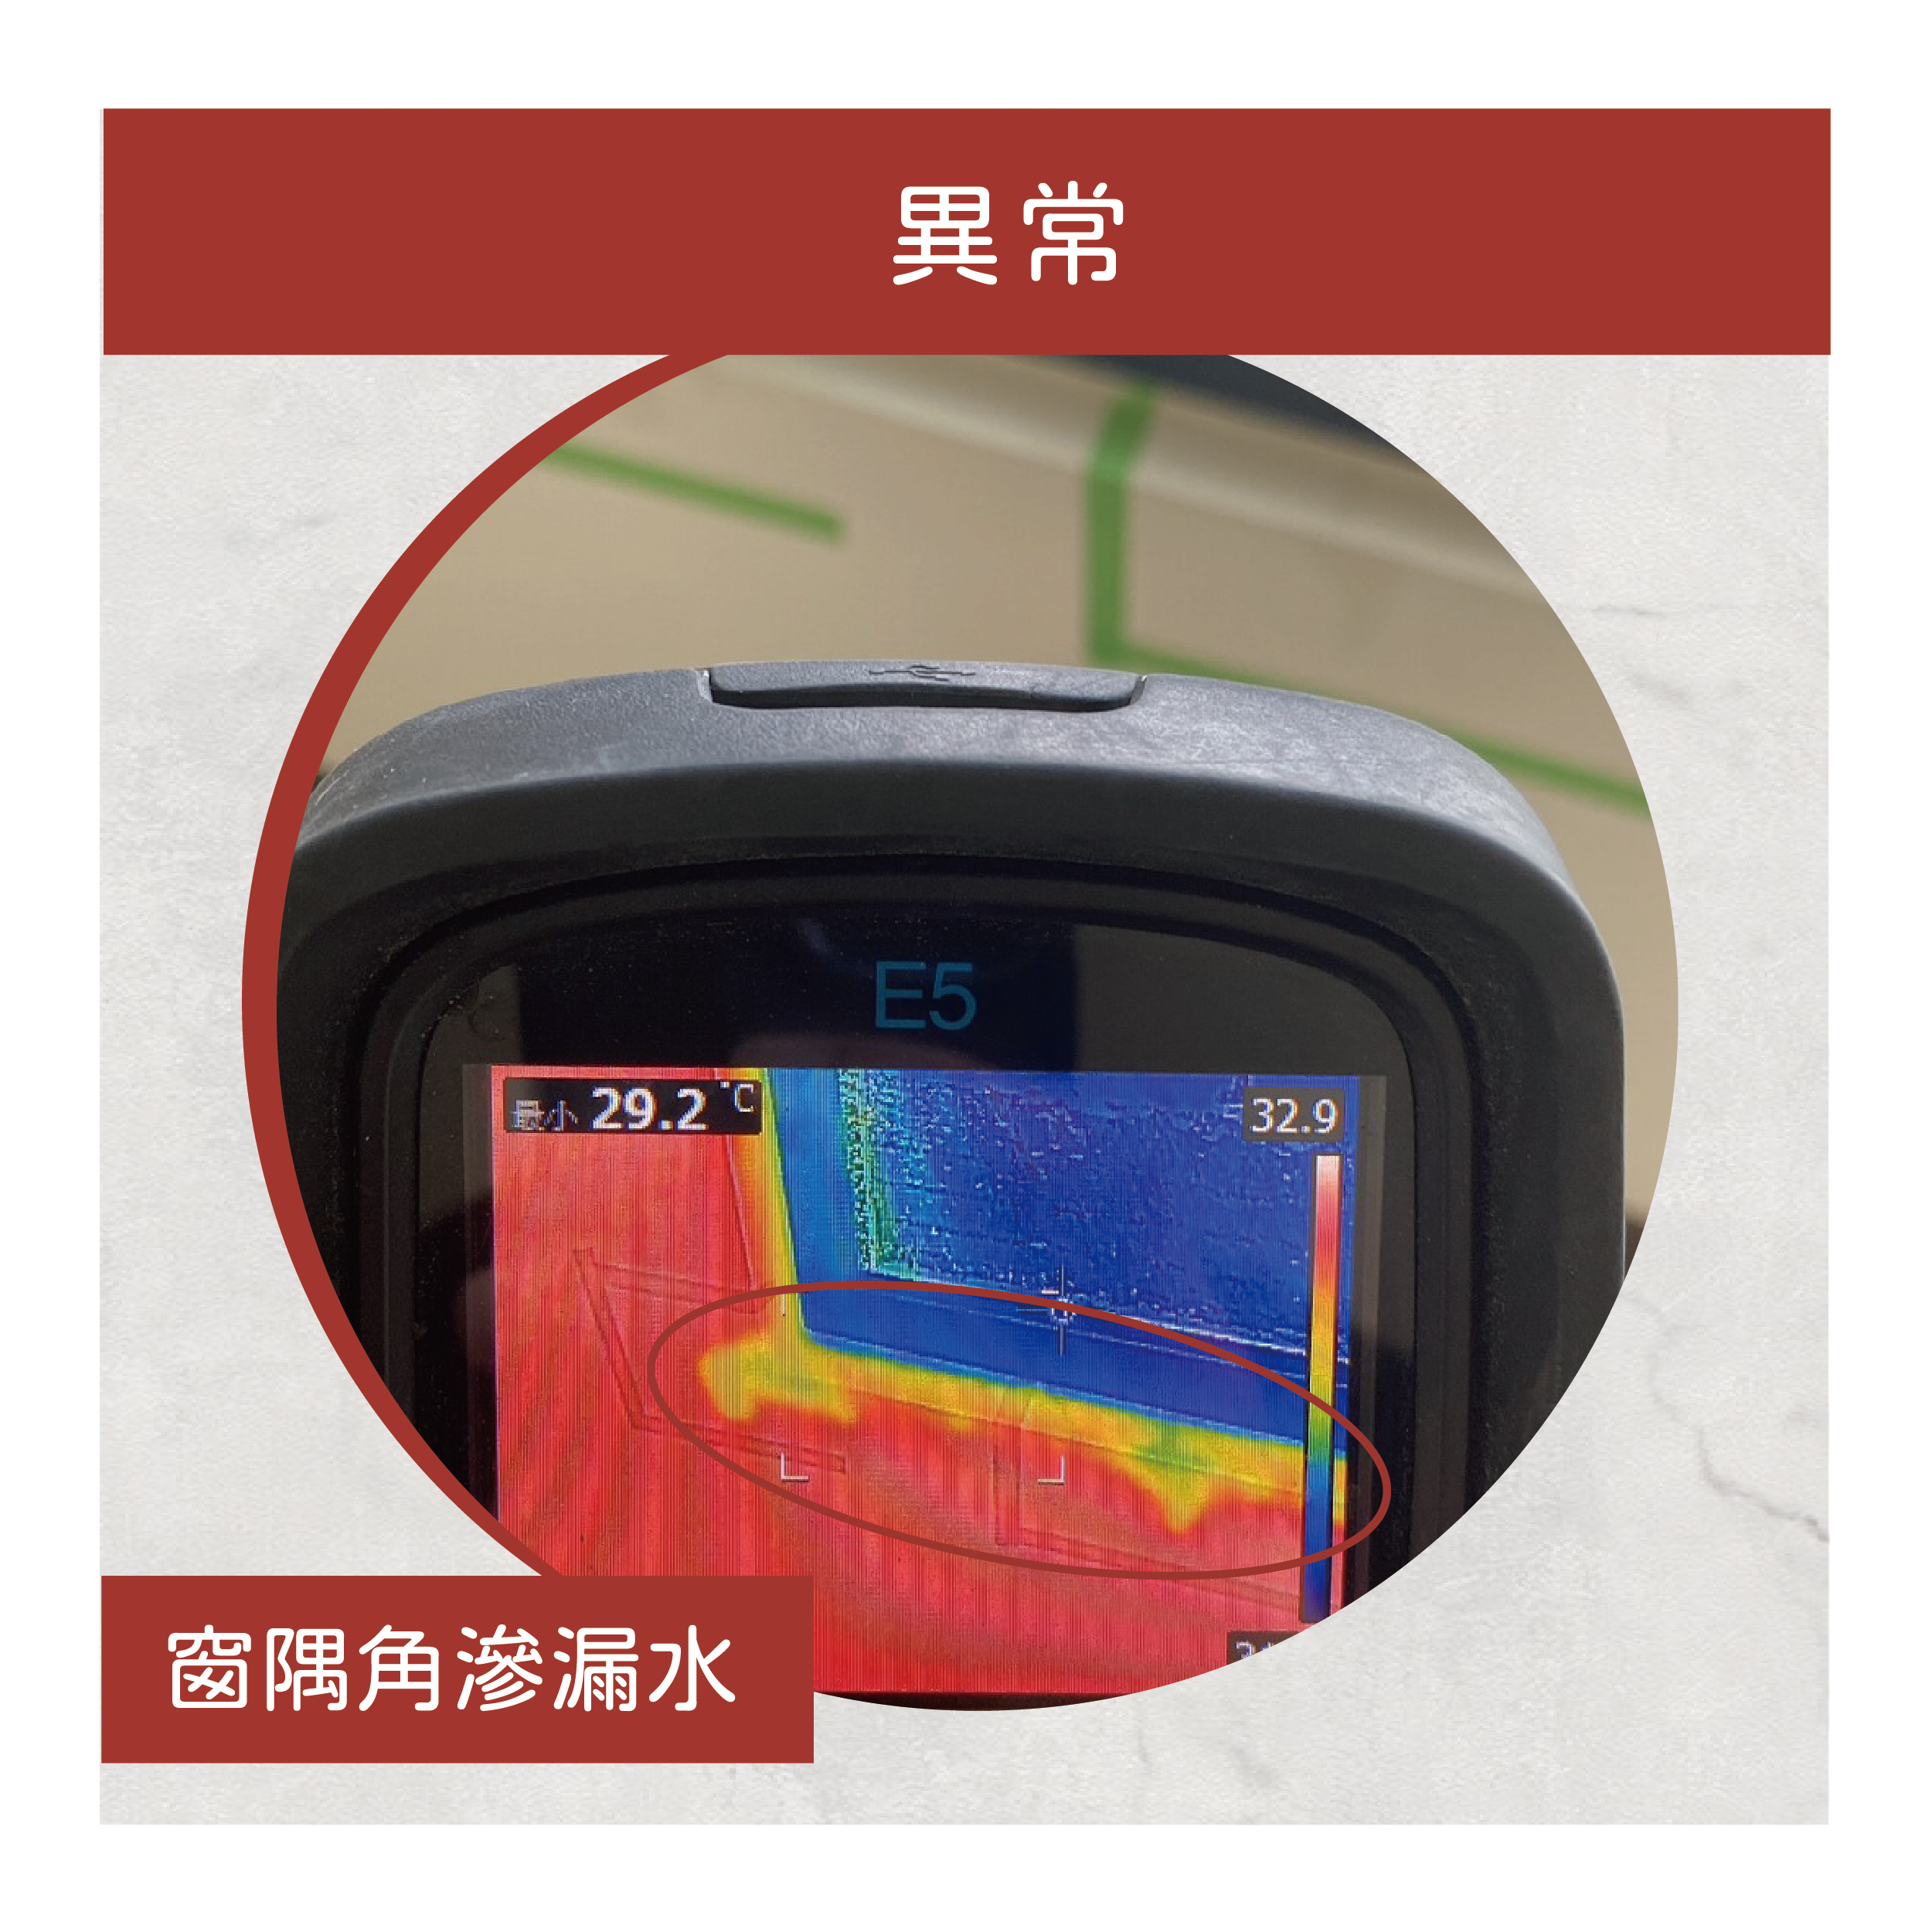 用紅外線熱顯像儀 檢測出窗隅角滲漏水